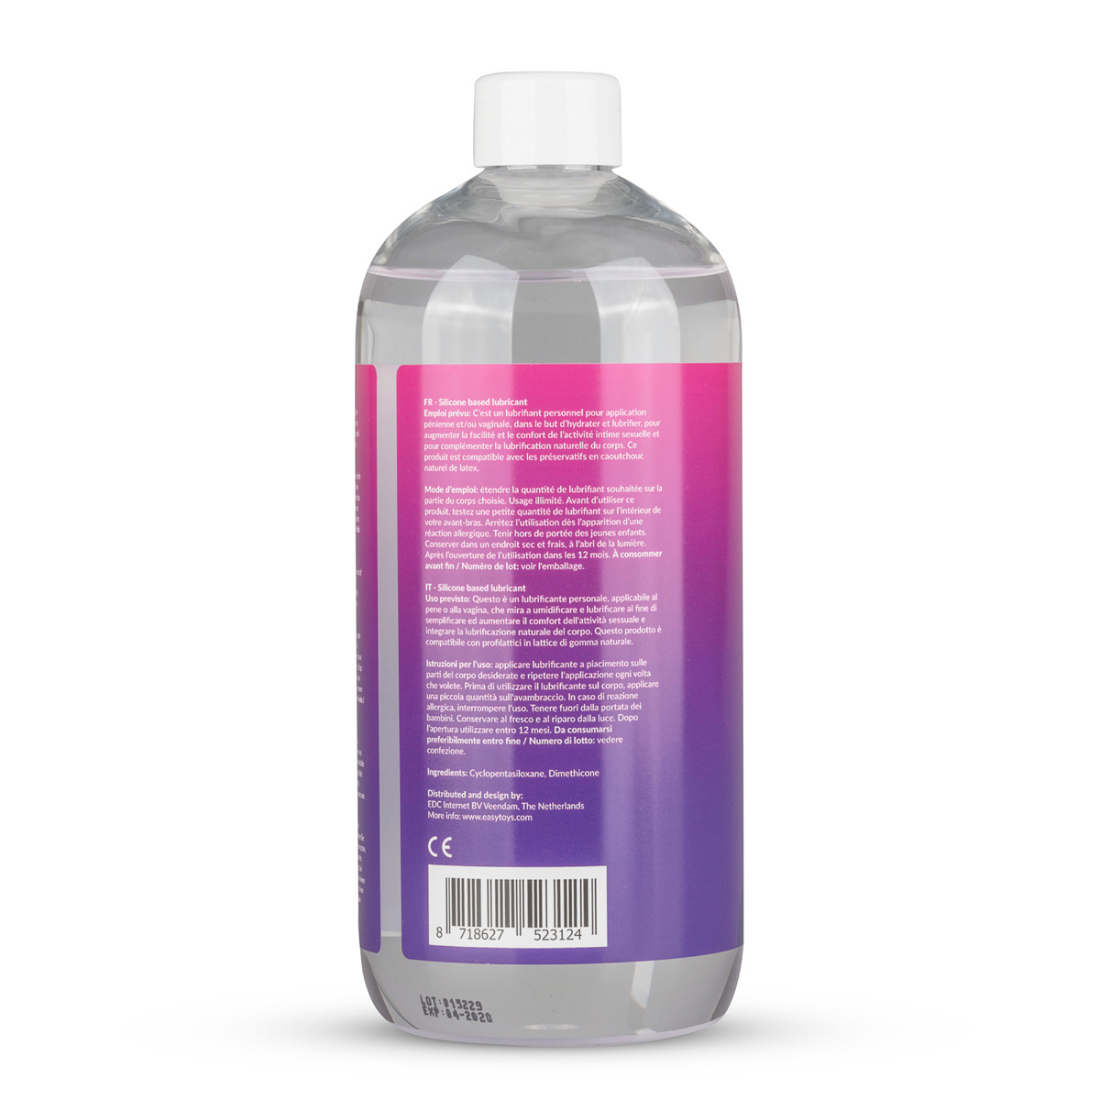 Grote fles (500 ml) siliconen glijmiddel met doseerpompje van het merk EasyGlide. Perfect voor gay mannen en te koop bij Flavourez.